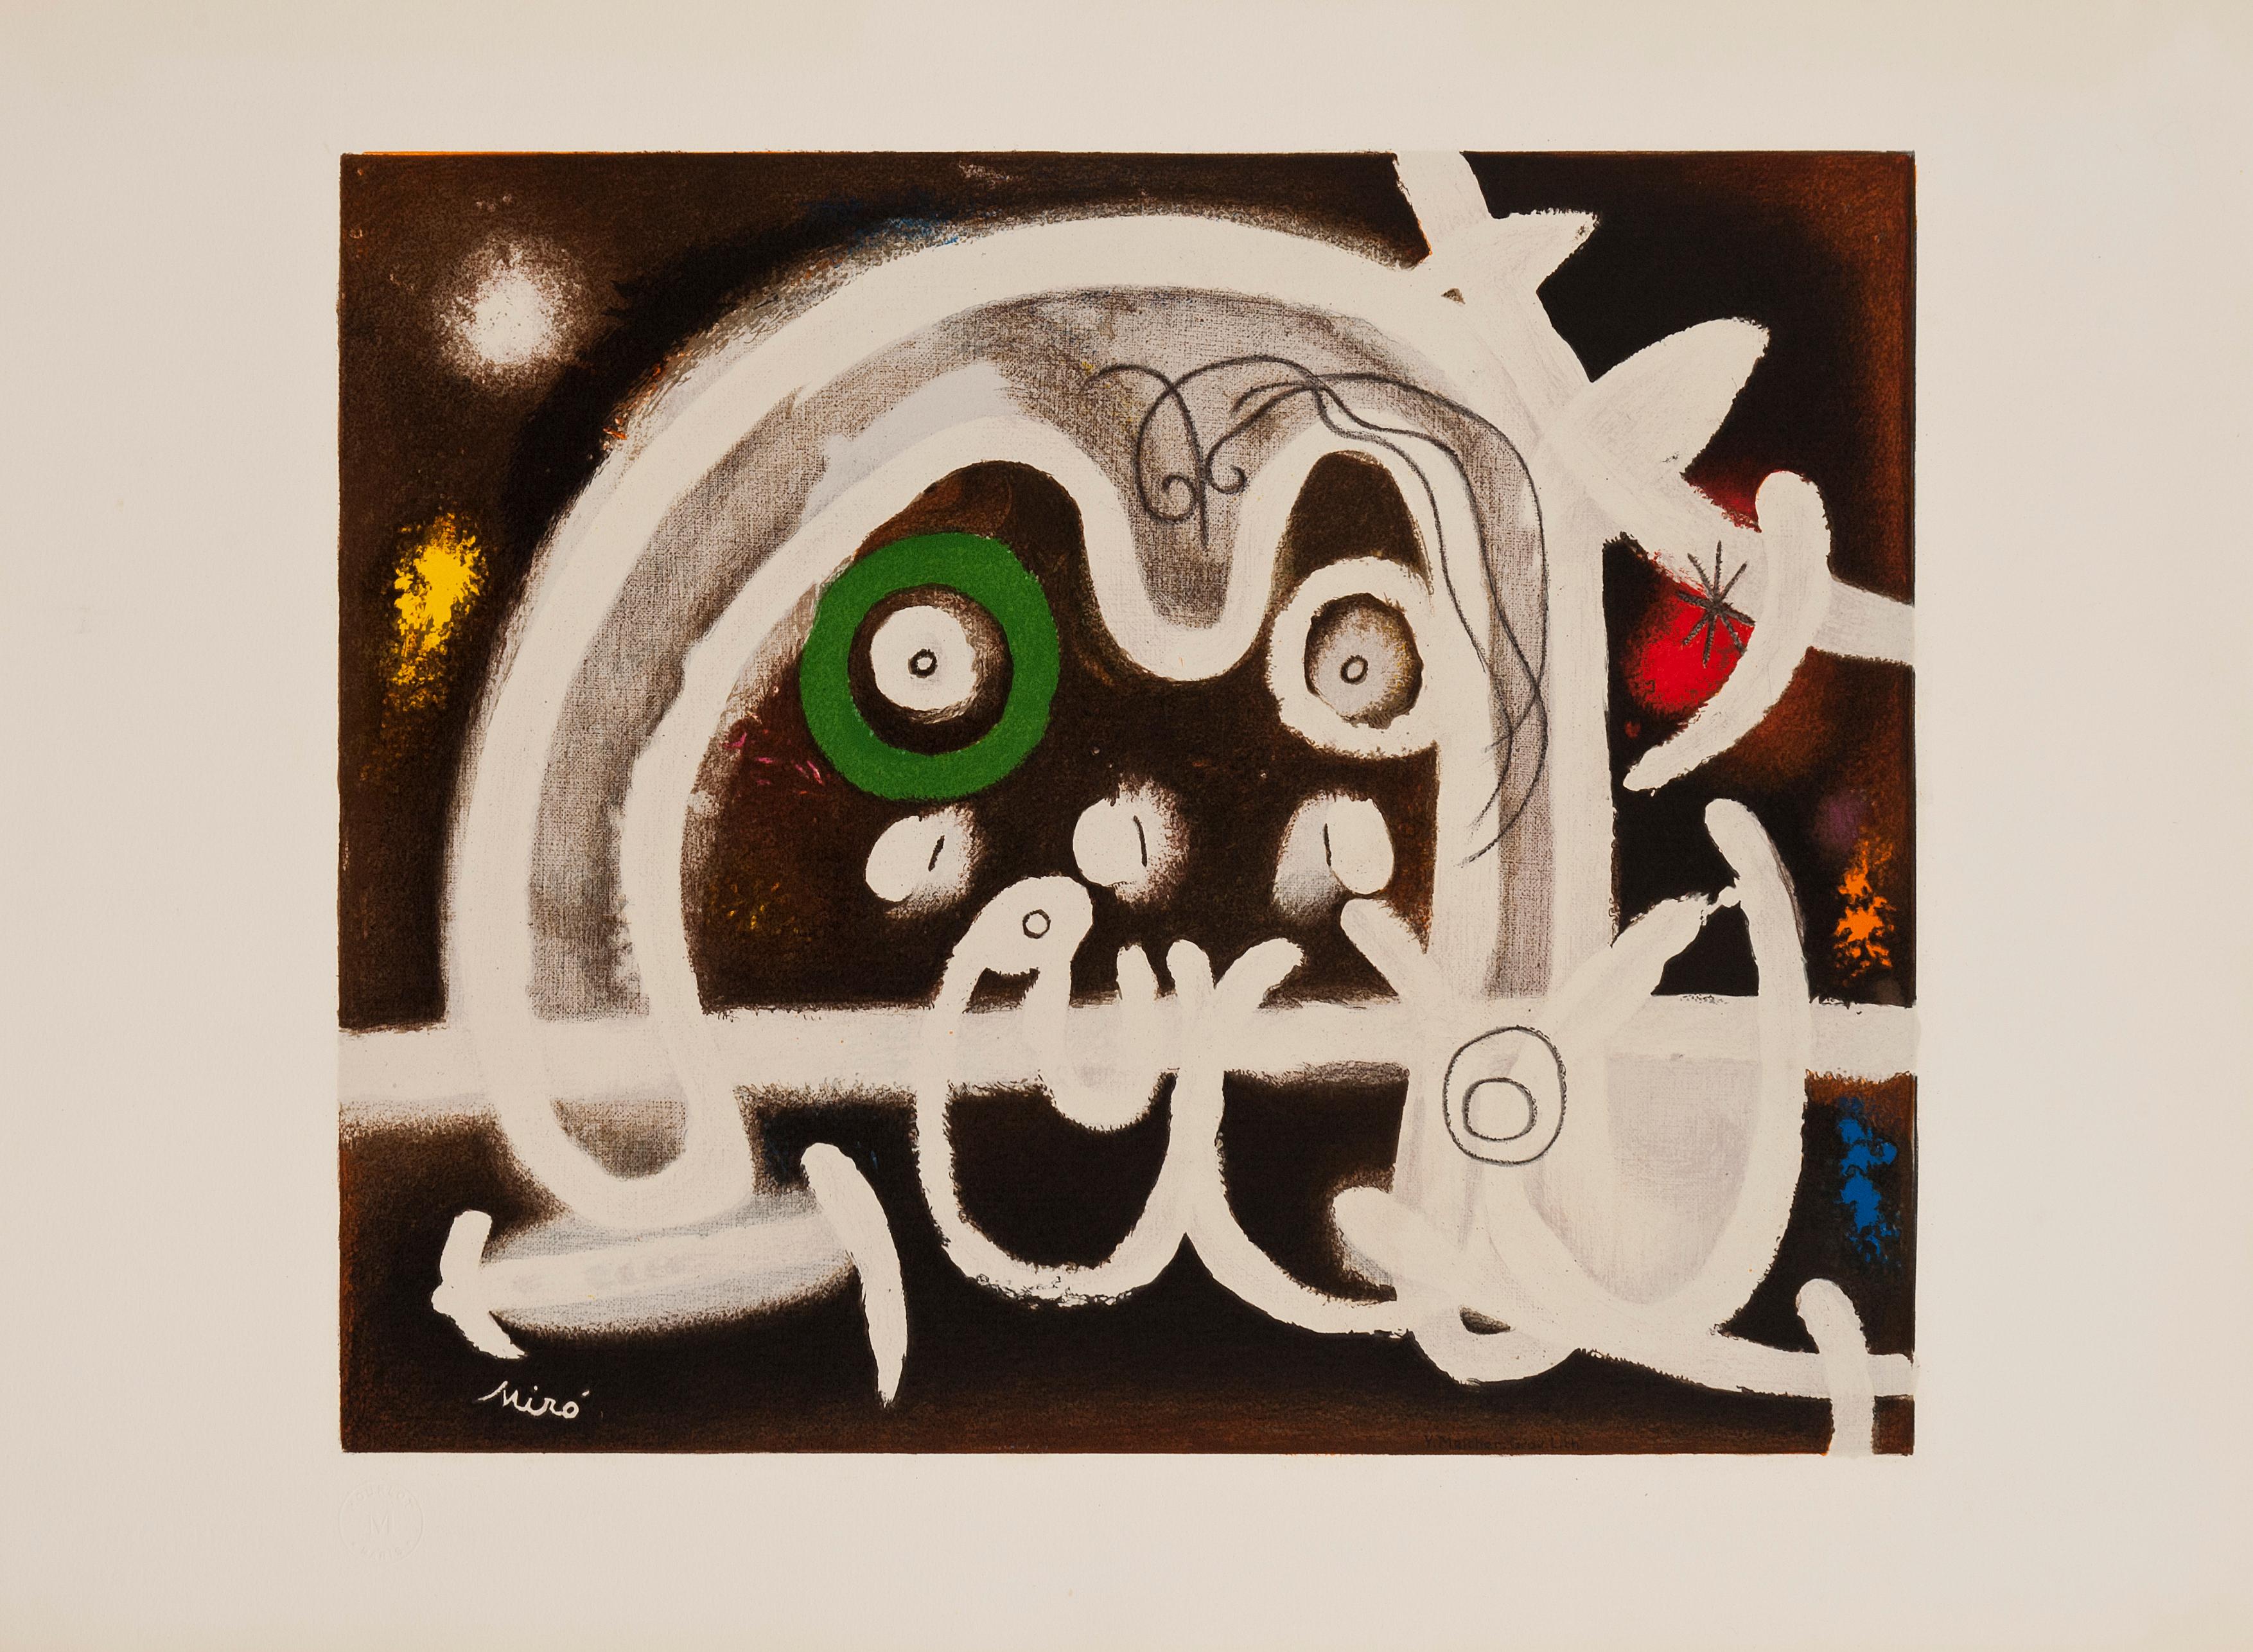 Abstract Print Joan Miró - Personnage et Oiseau de Joan Miro (impression abstraite), 1984